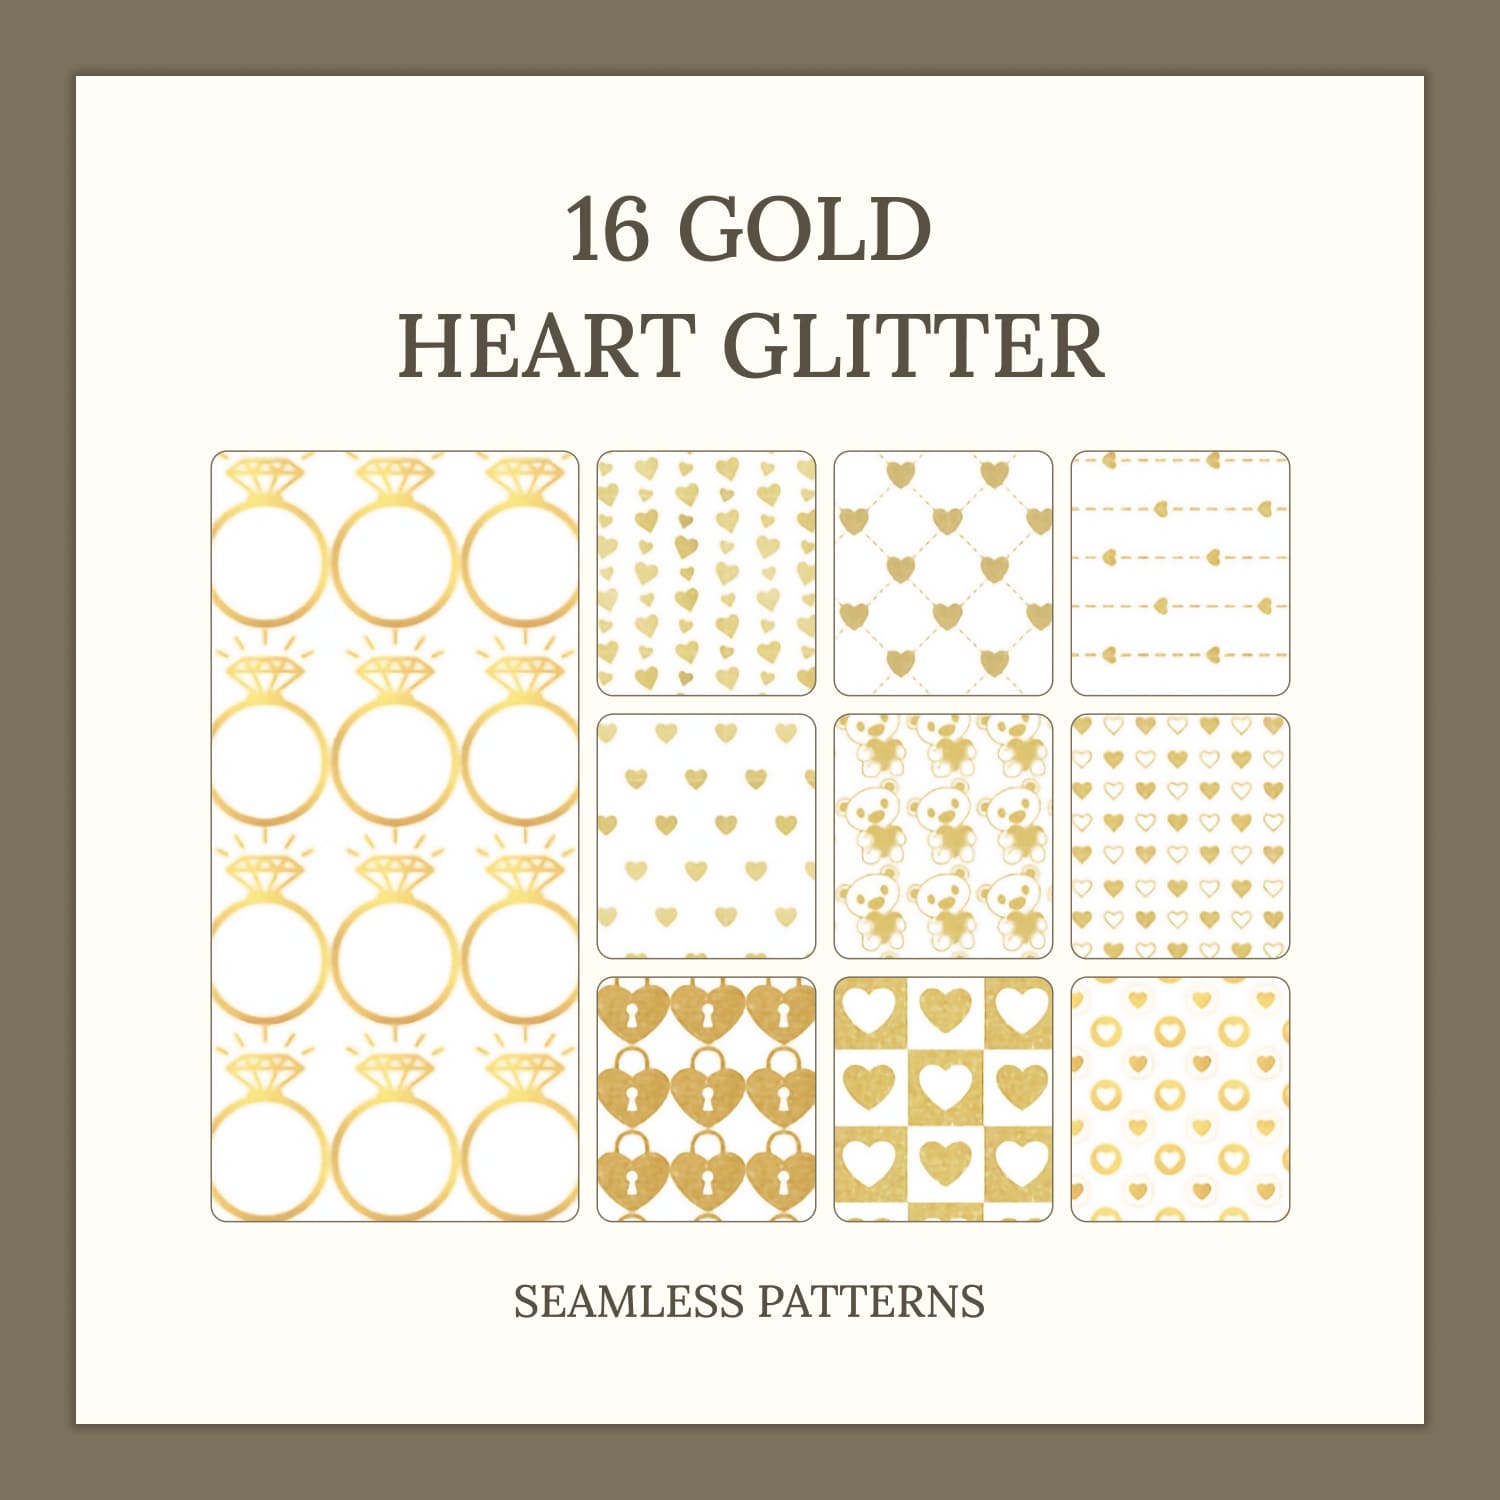 16 GOLD HEART GLITTER SEAMLESS PATTERNS.